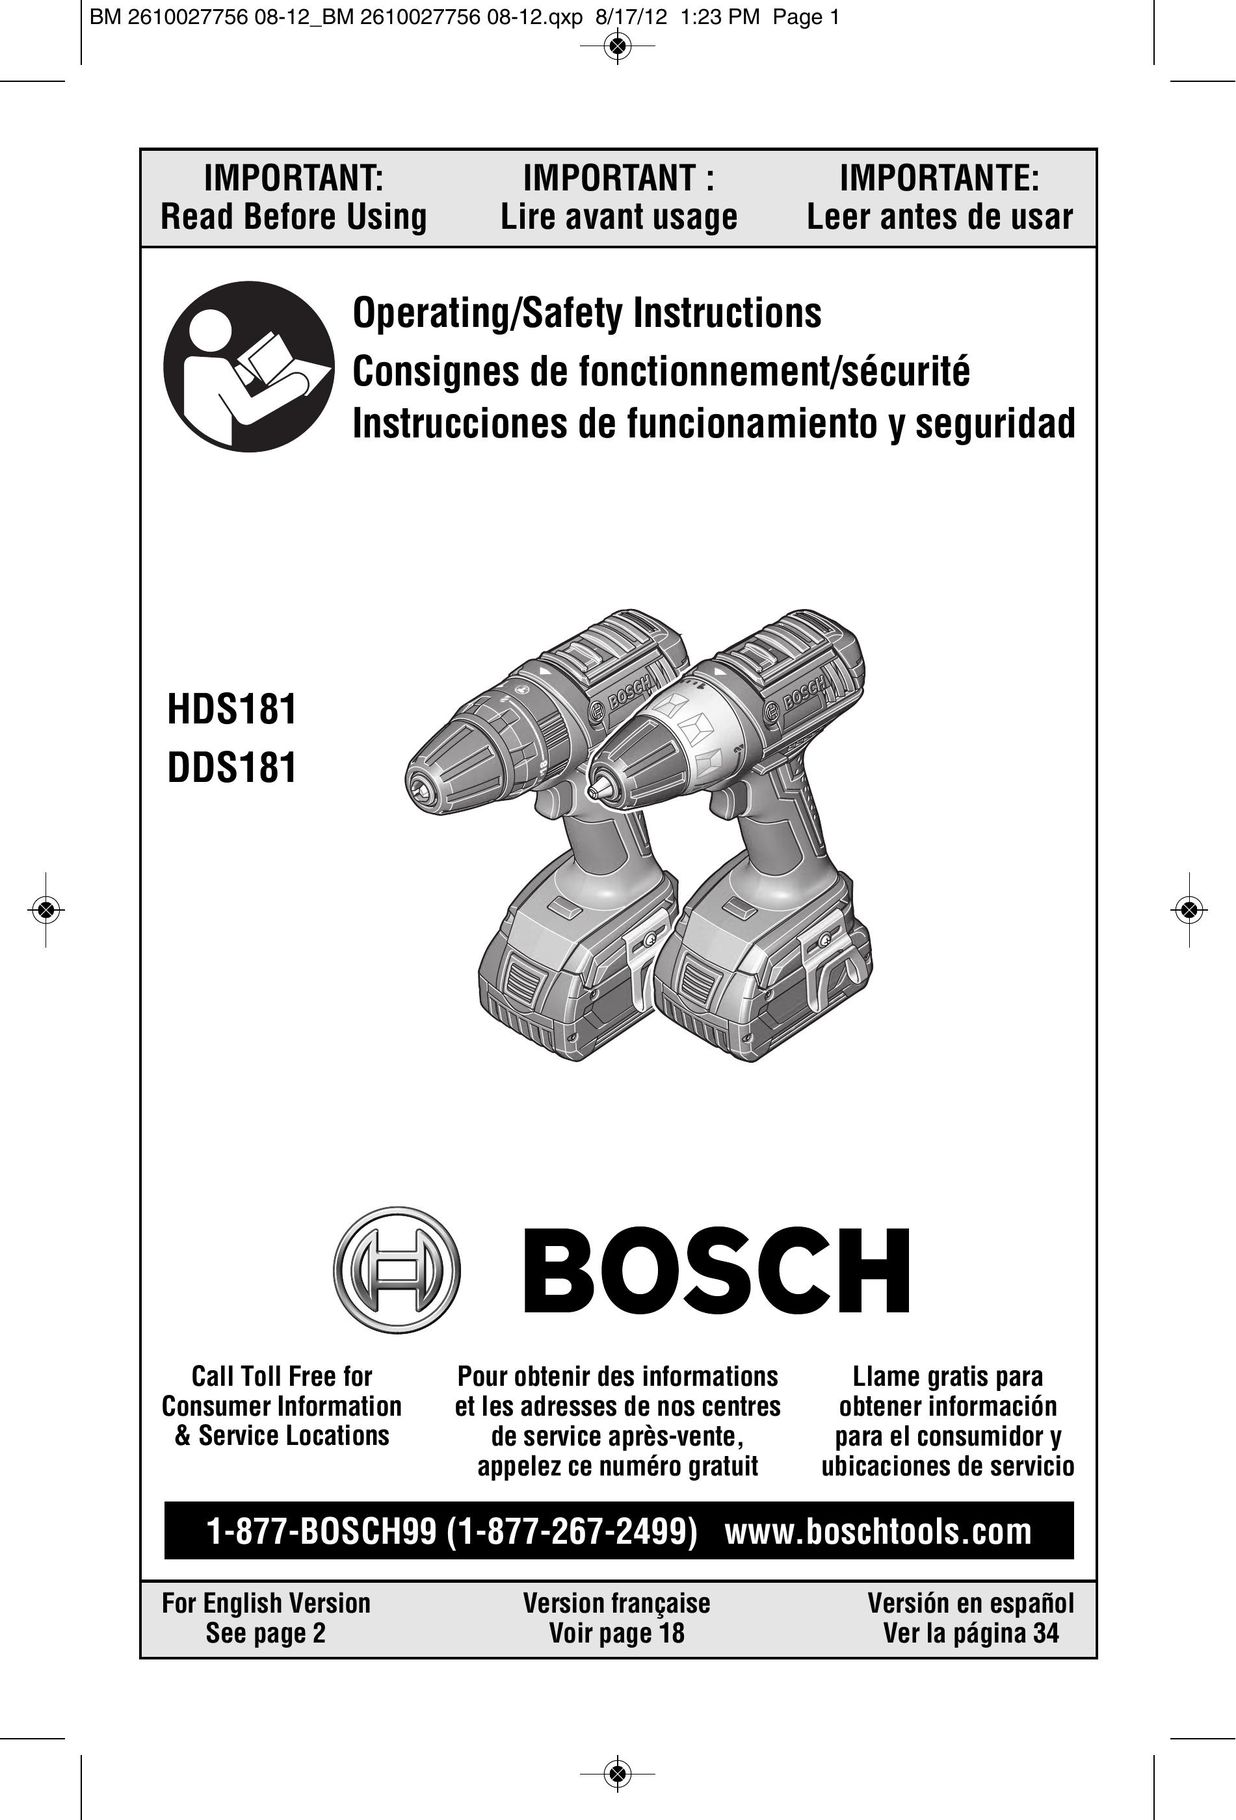 Bosch Power Tools CLPK232-180 Cordless Drill User Manual